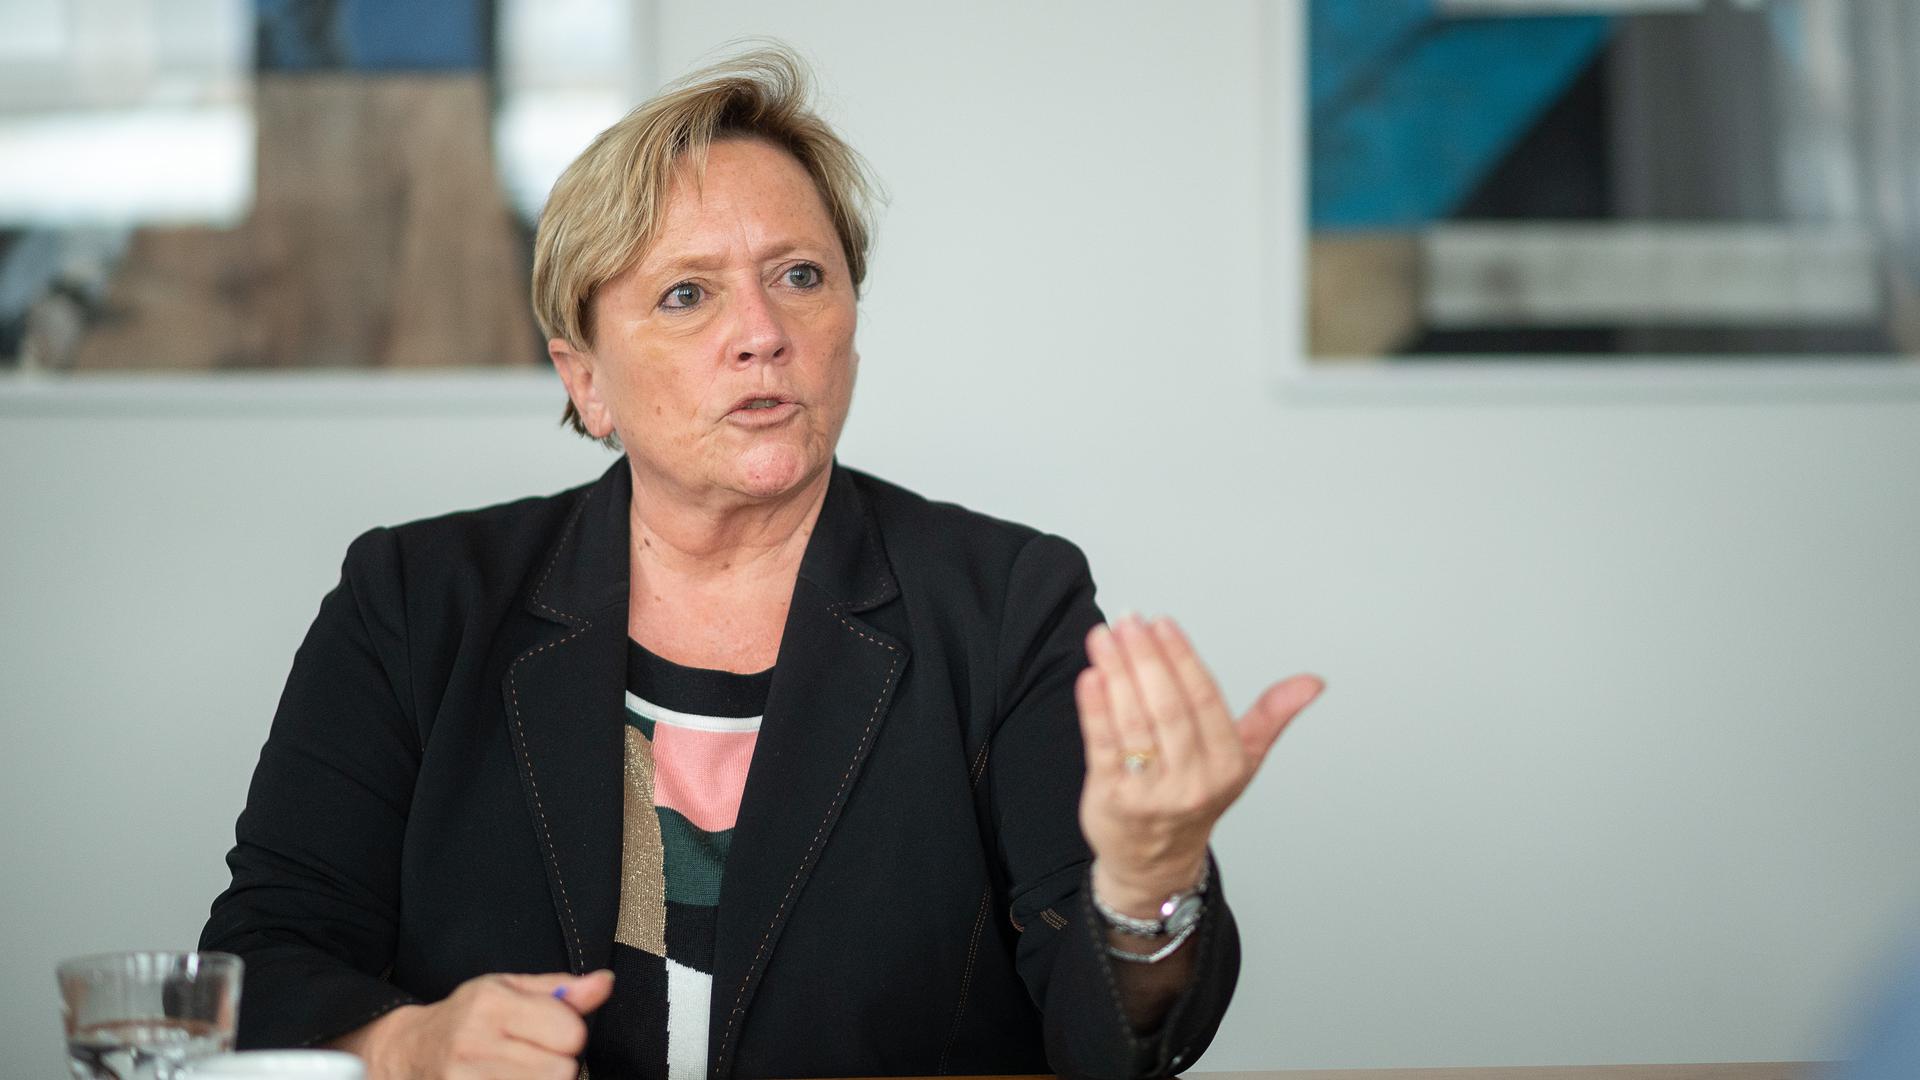 Susanne Eisenmann (CDU), Ministerin für Kultus, Jugend und Sport von Baden-Württemberg und Spitzenkandidatin der CDU Baden-Württemberg zur Landtagswahl 2021, spricht während eines Interviews.